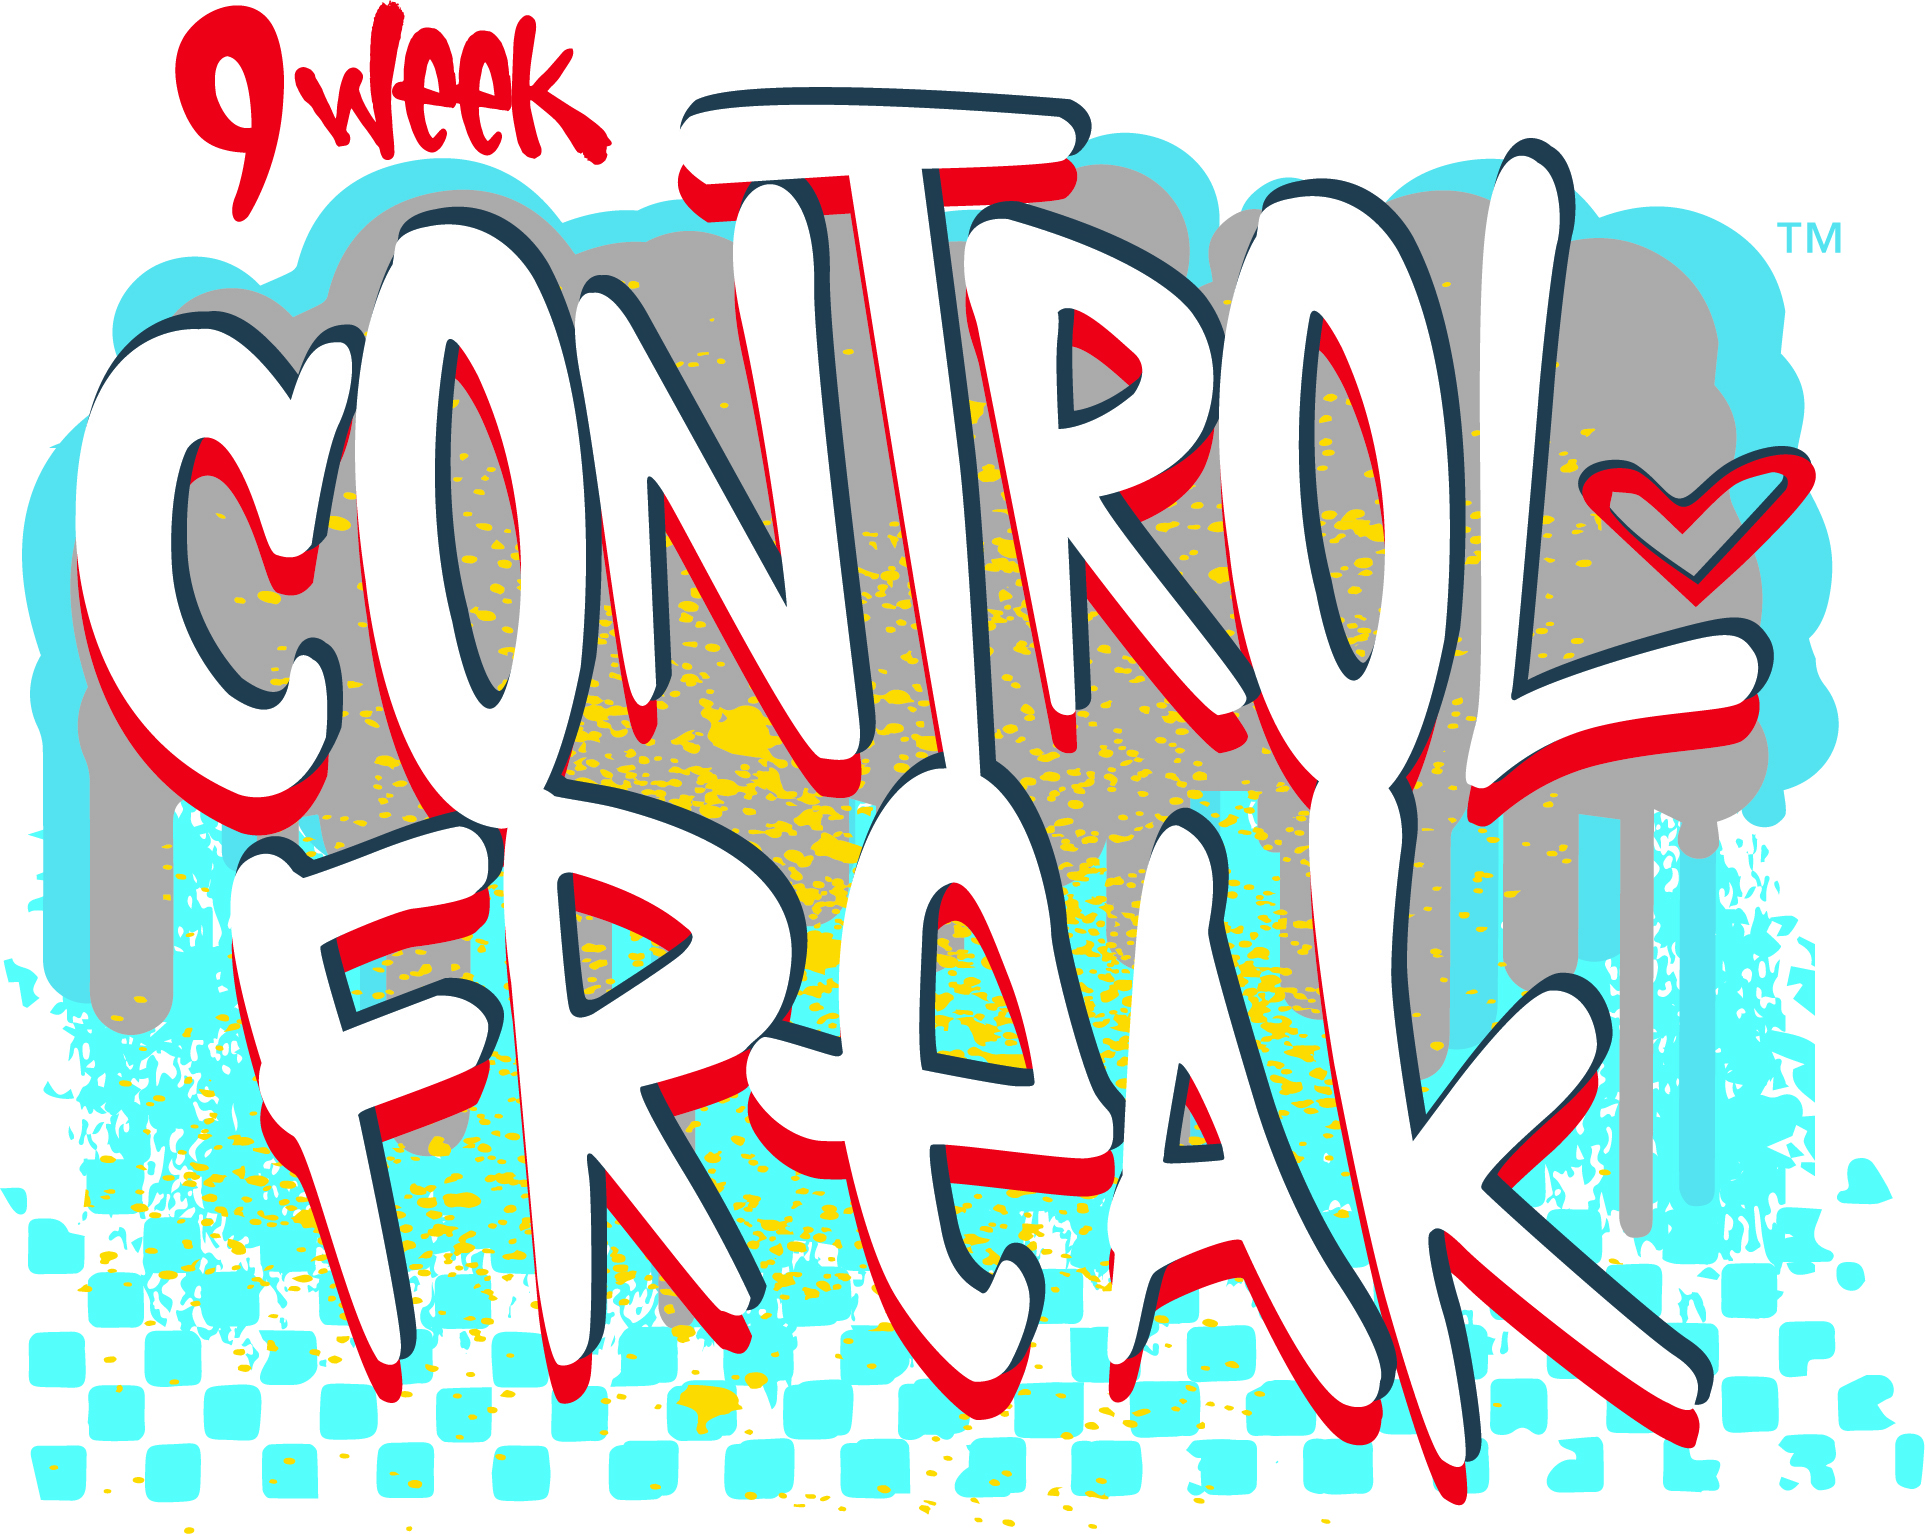 9 Week Control Freak Logo | BODi Workout